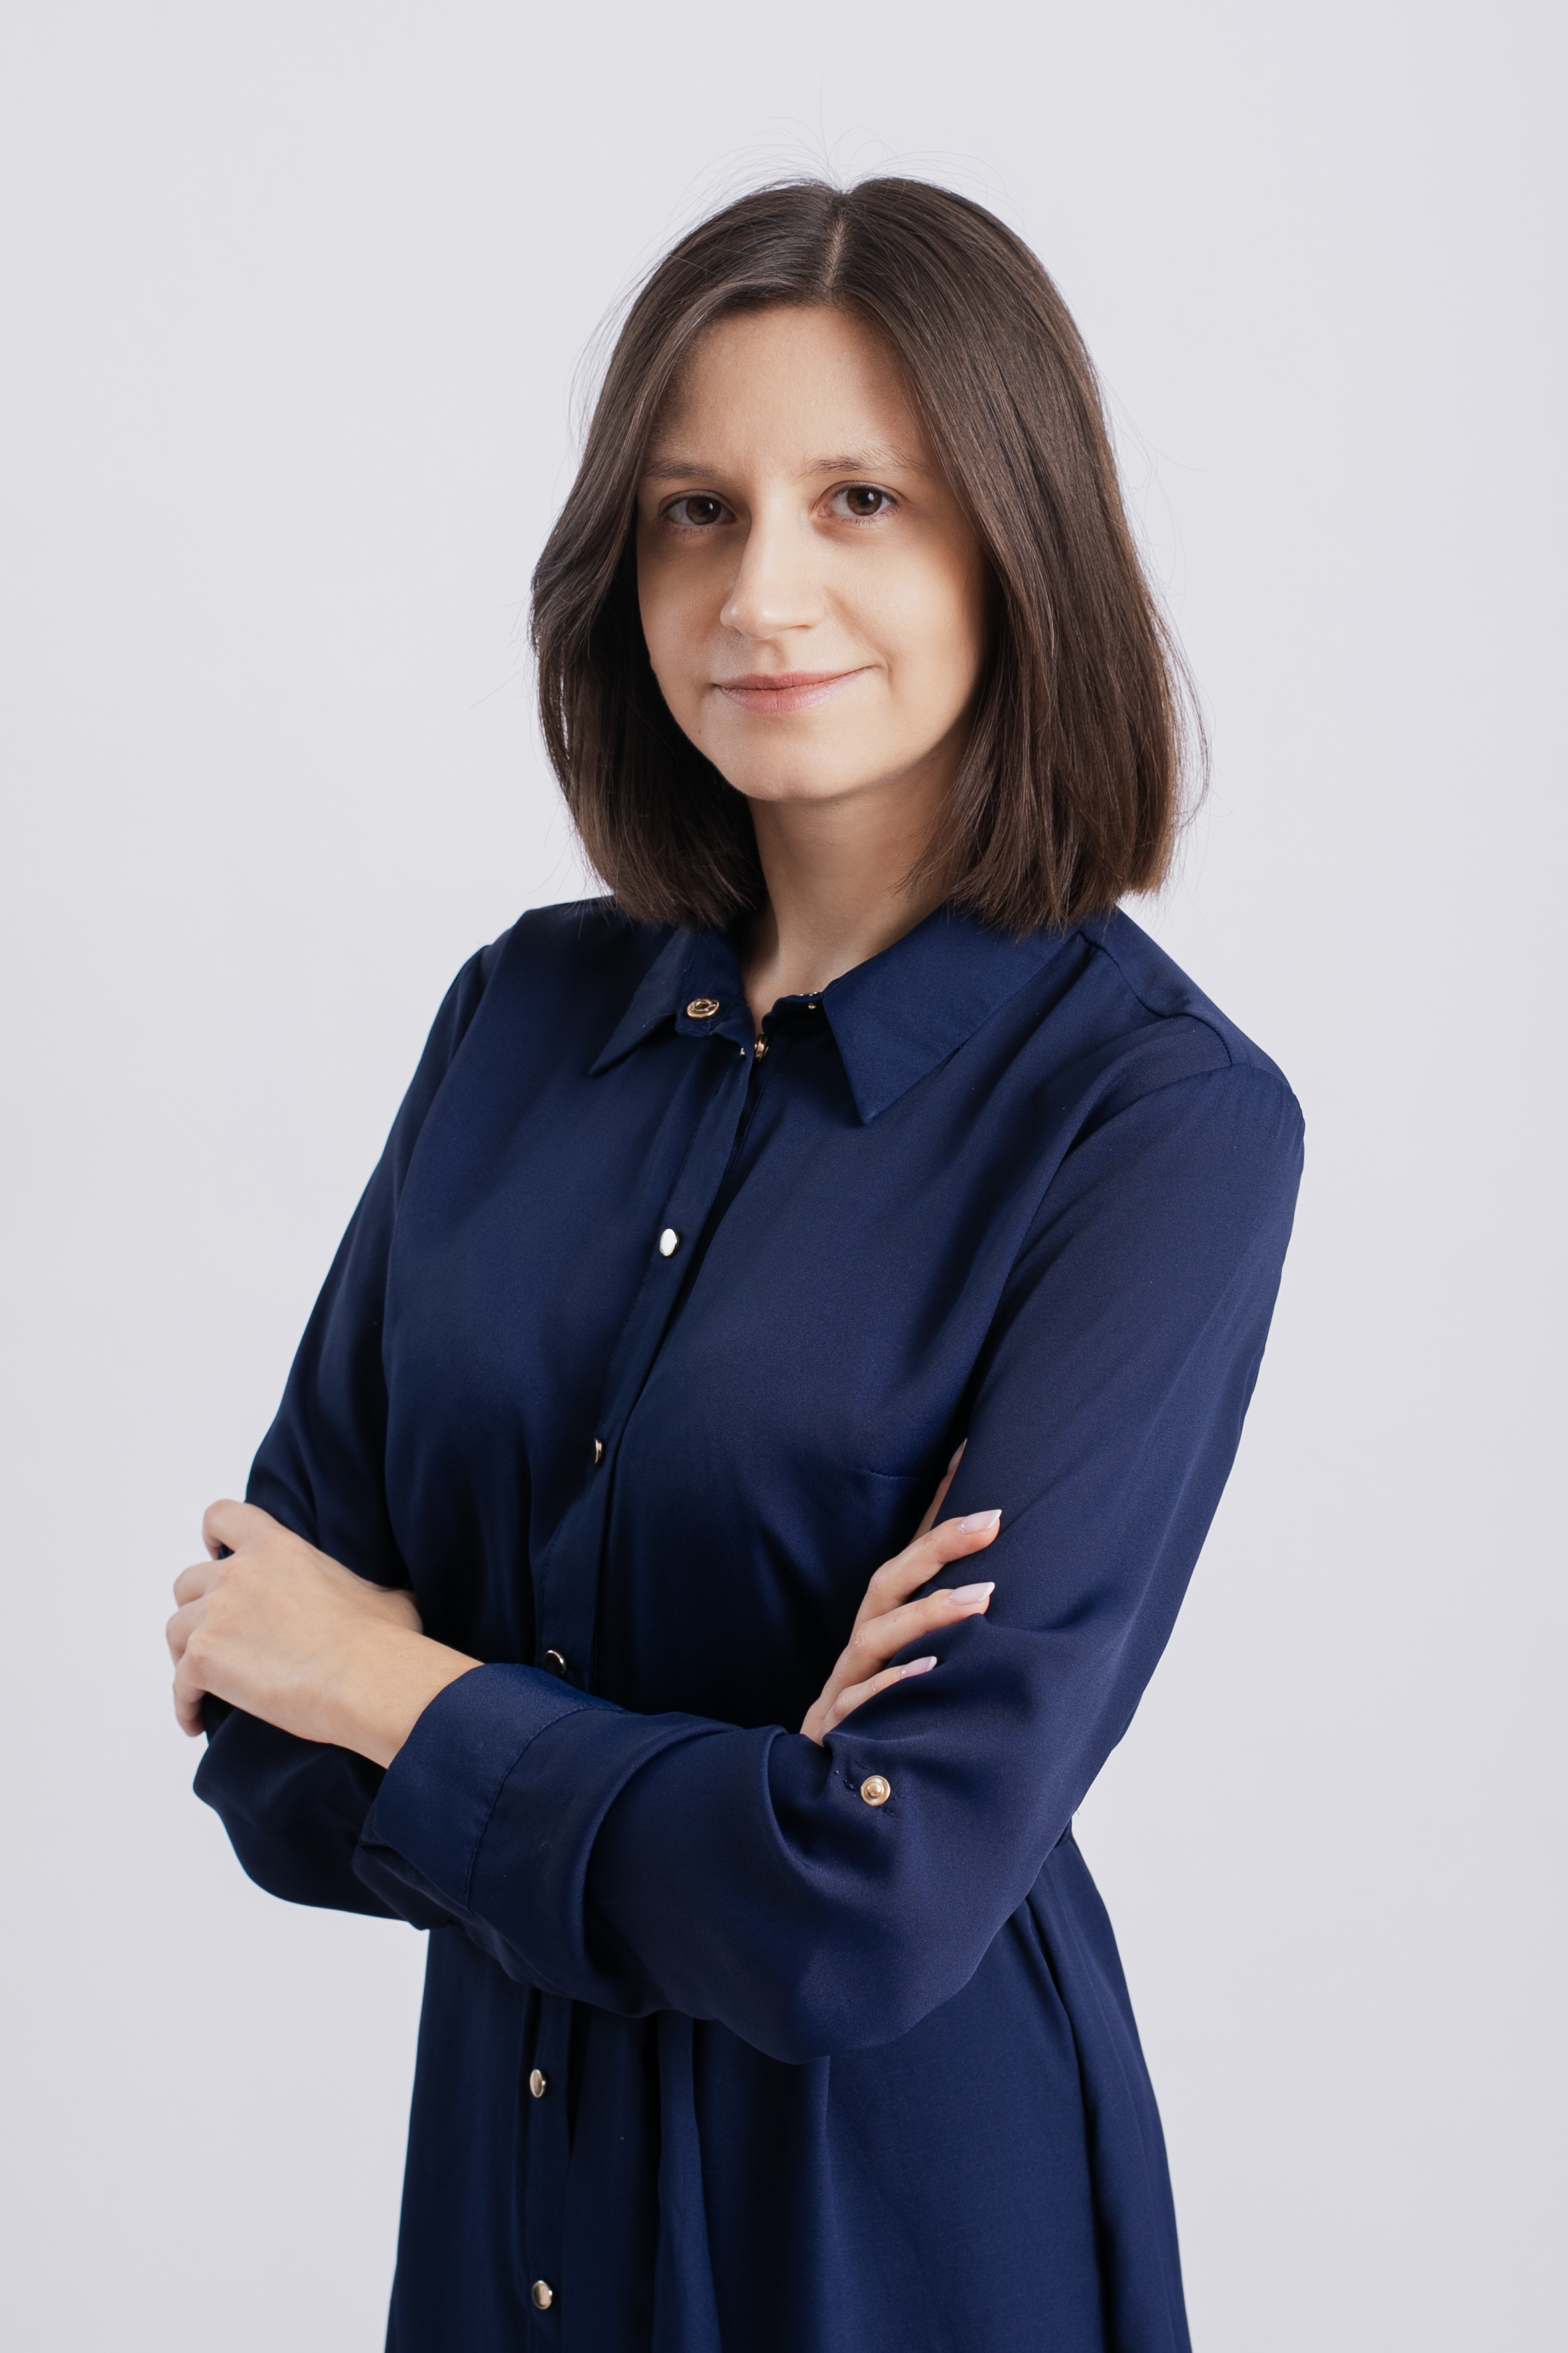 radca prawny Paulina Kosińska